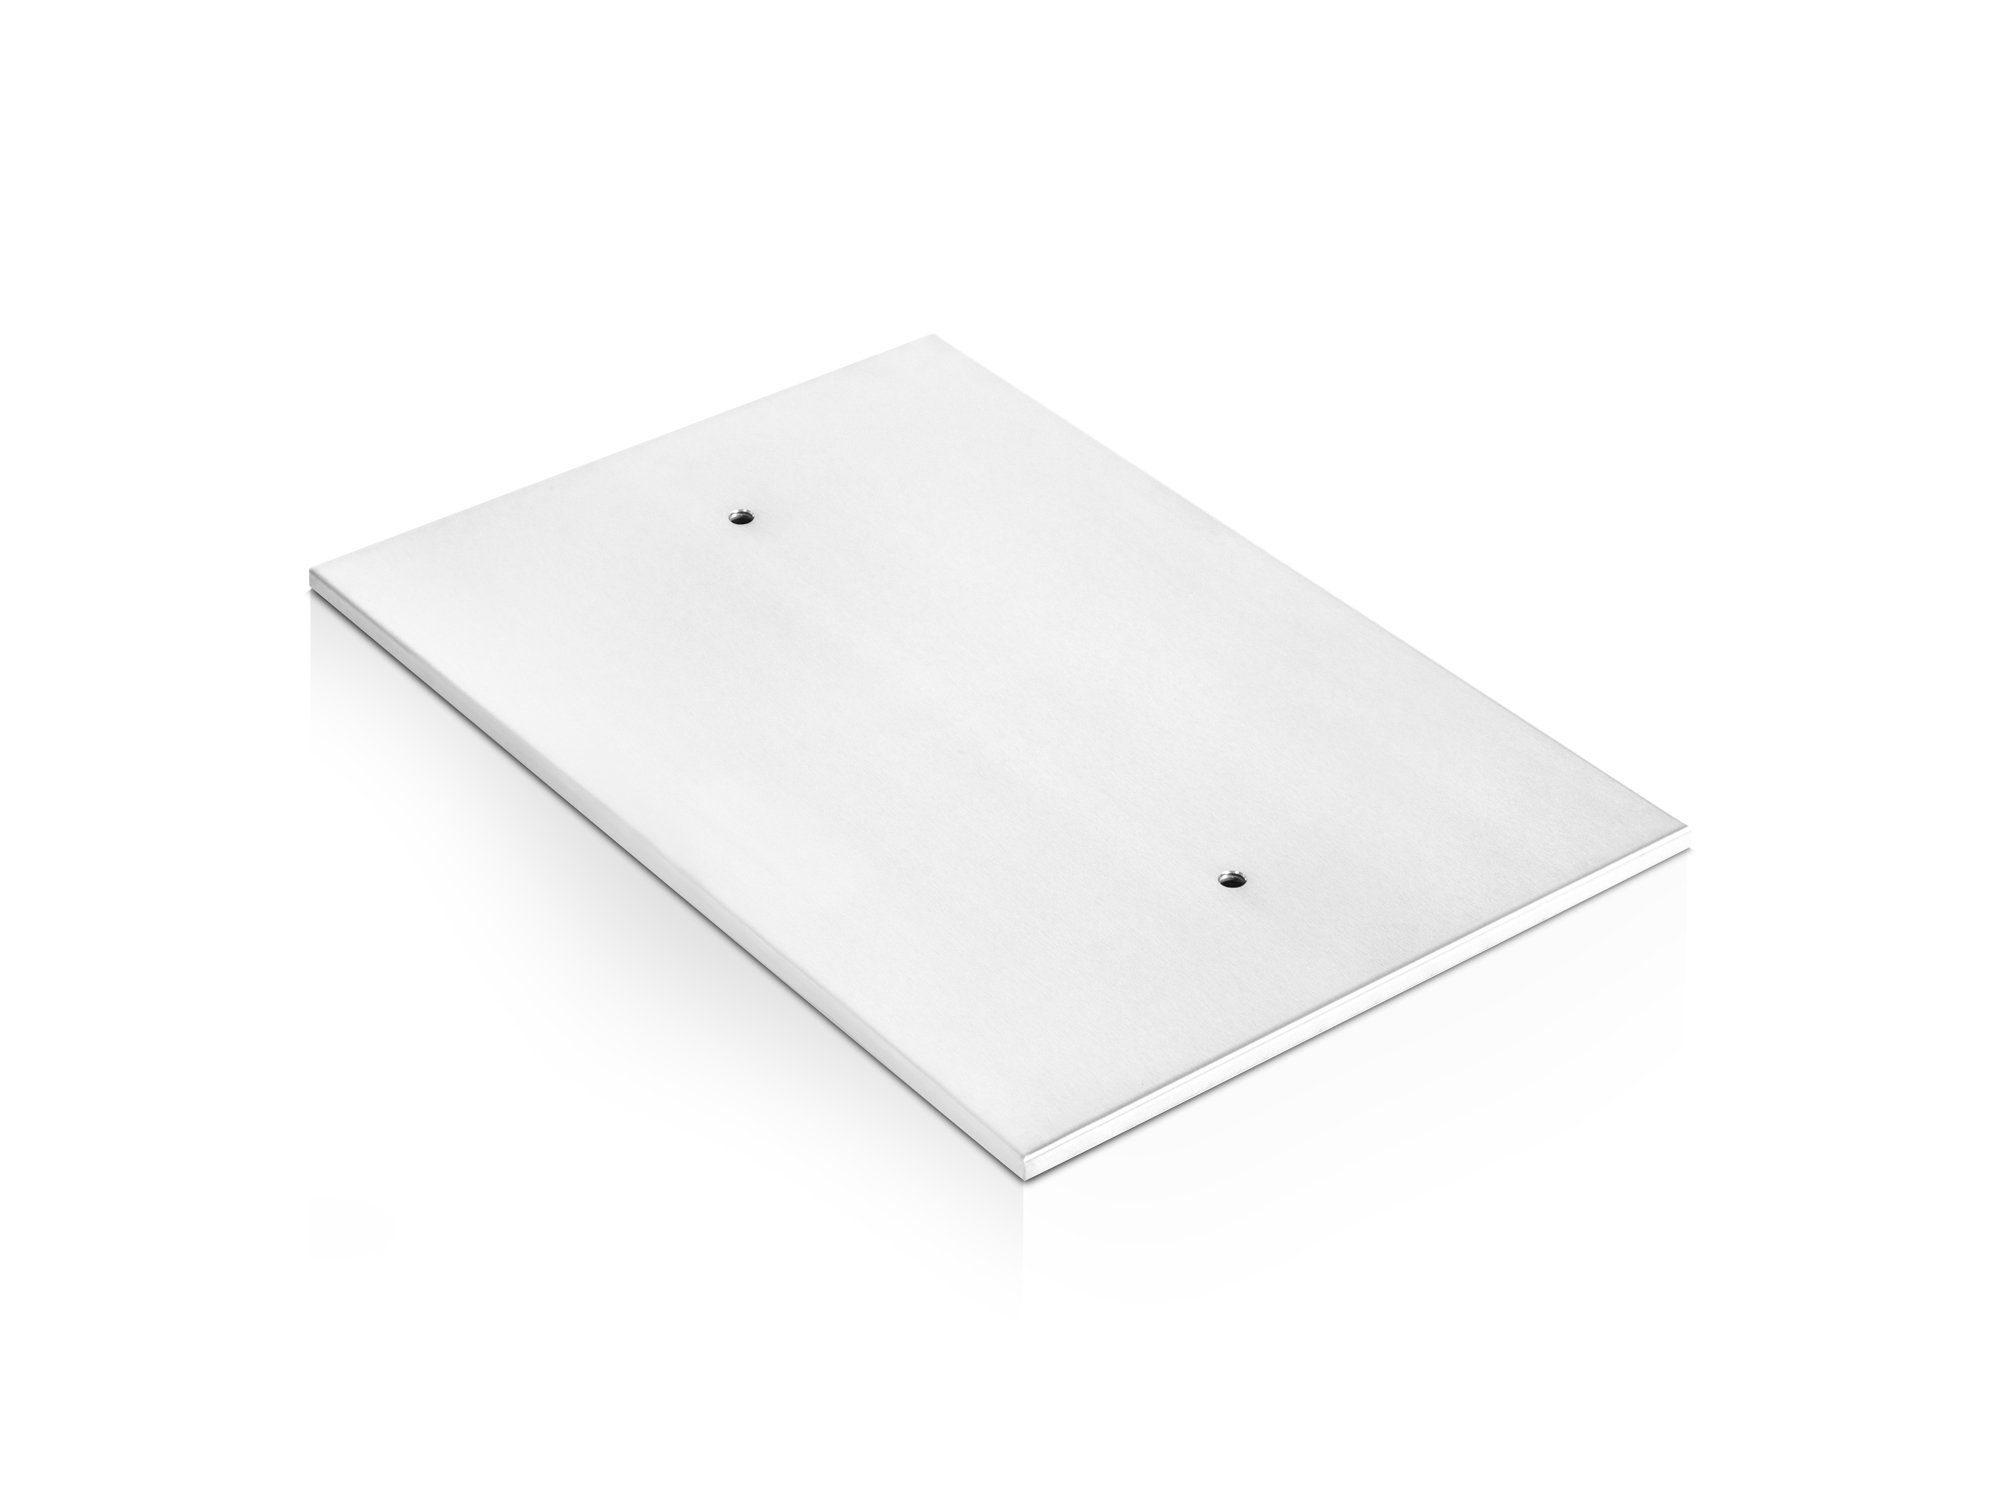 Moebel-Eins Tischgestell Bodenplatte für Esstische, Material Stahl, Bodenplatte für Esstische, Material Stahl Silber